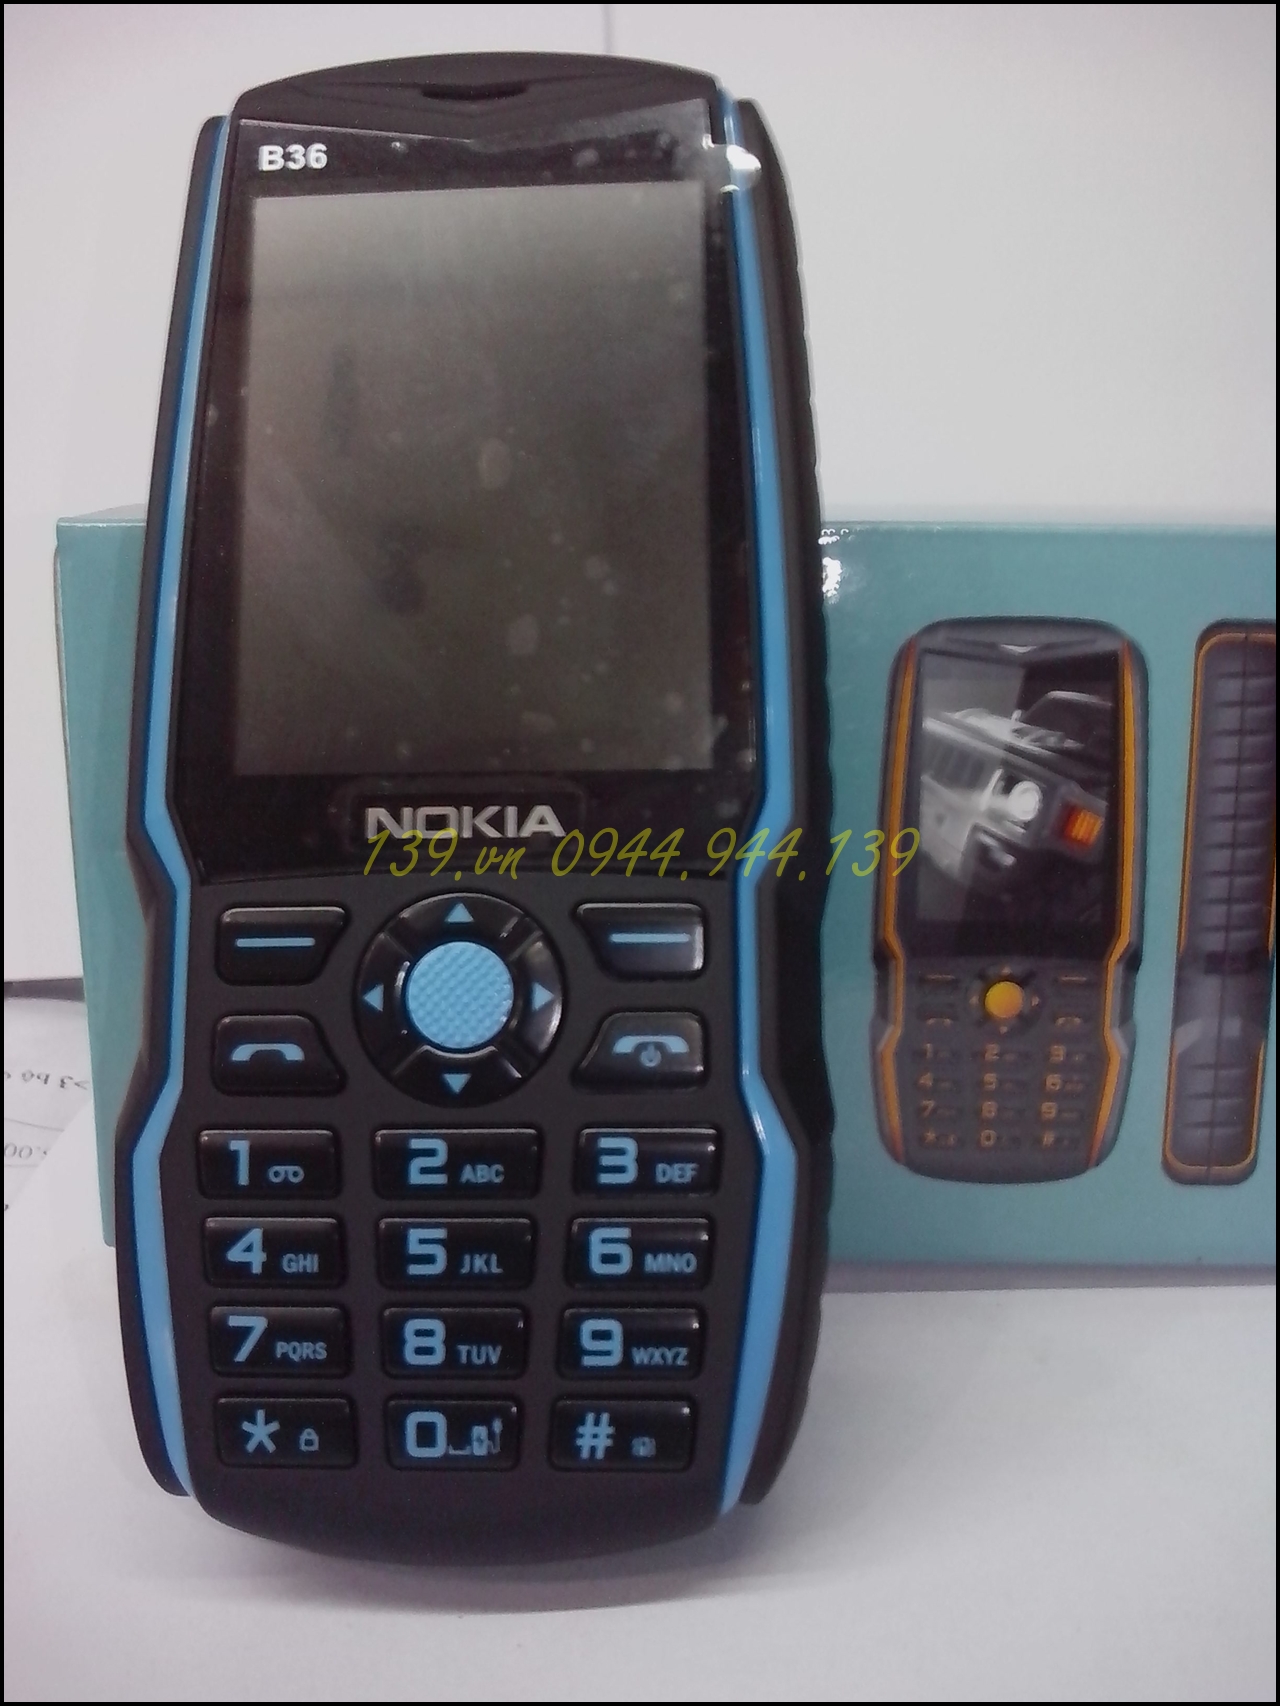 Điện thoại Nokia B36 kiểu landrover hầm hố